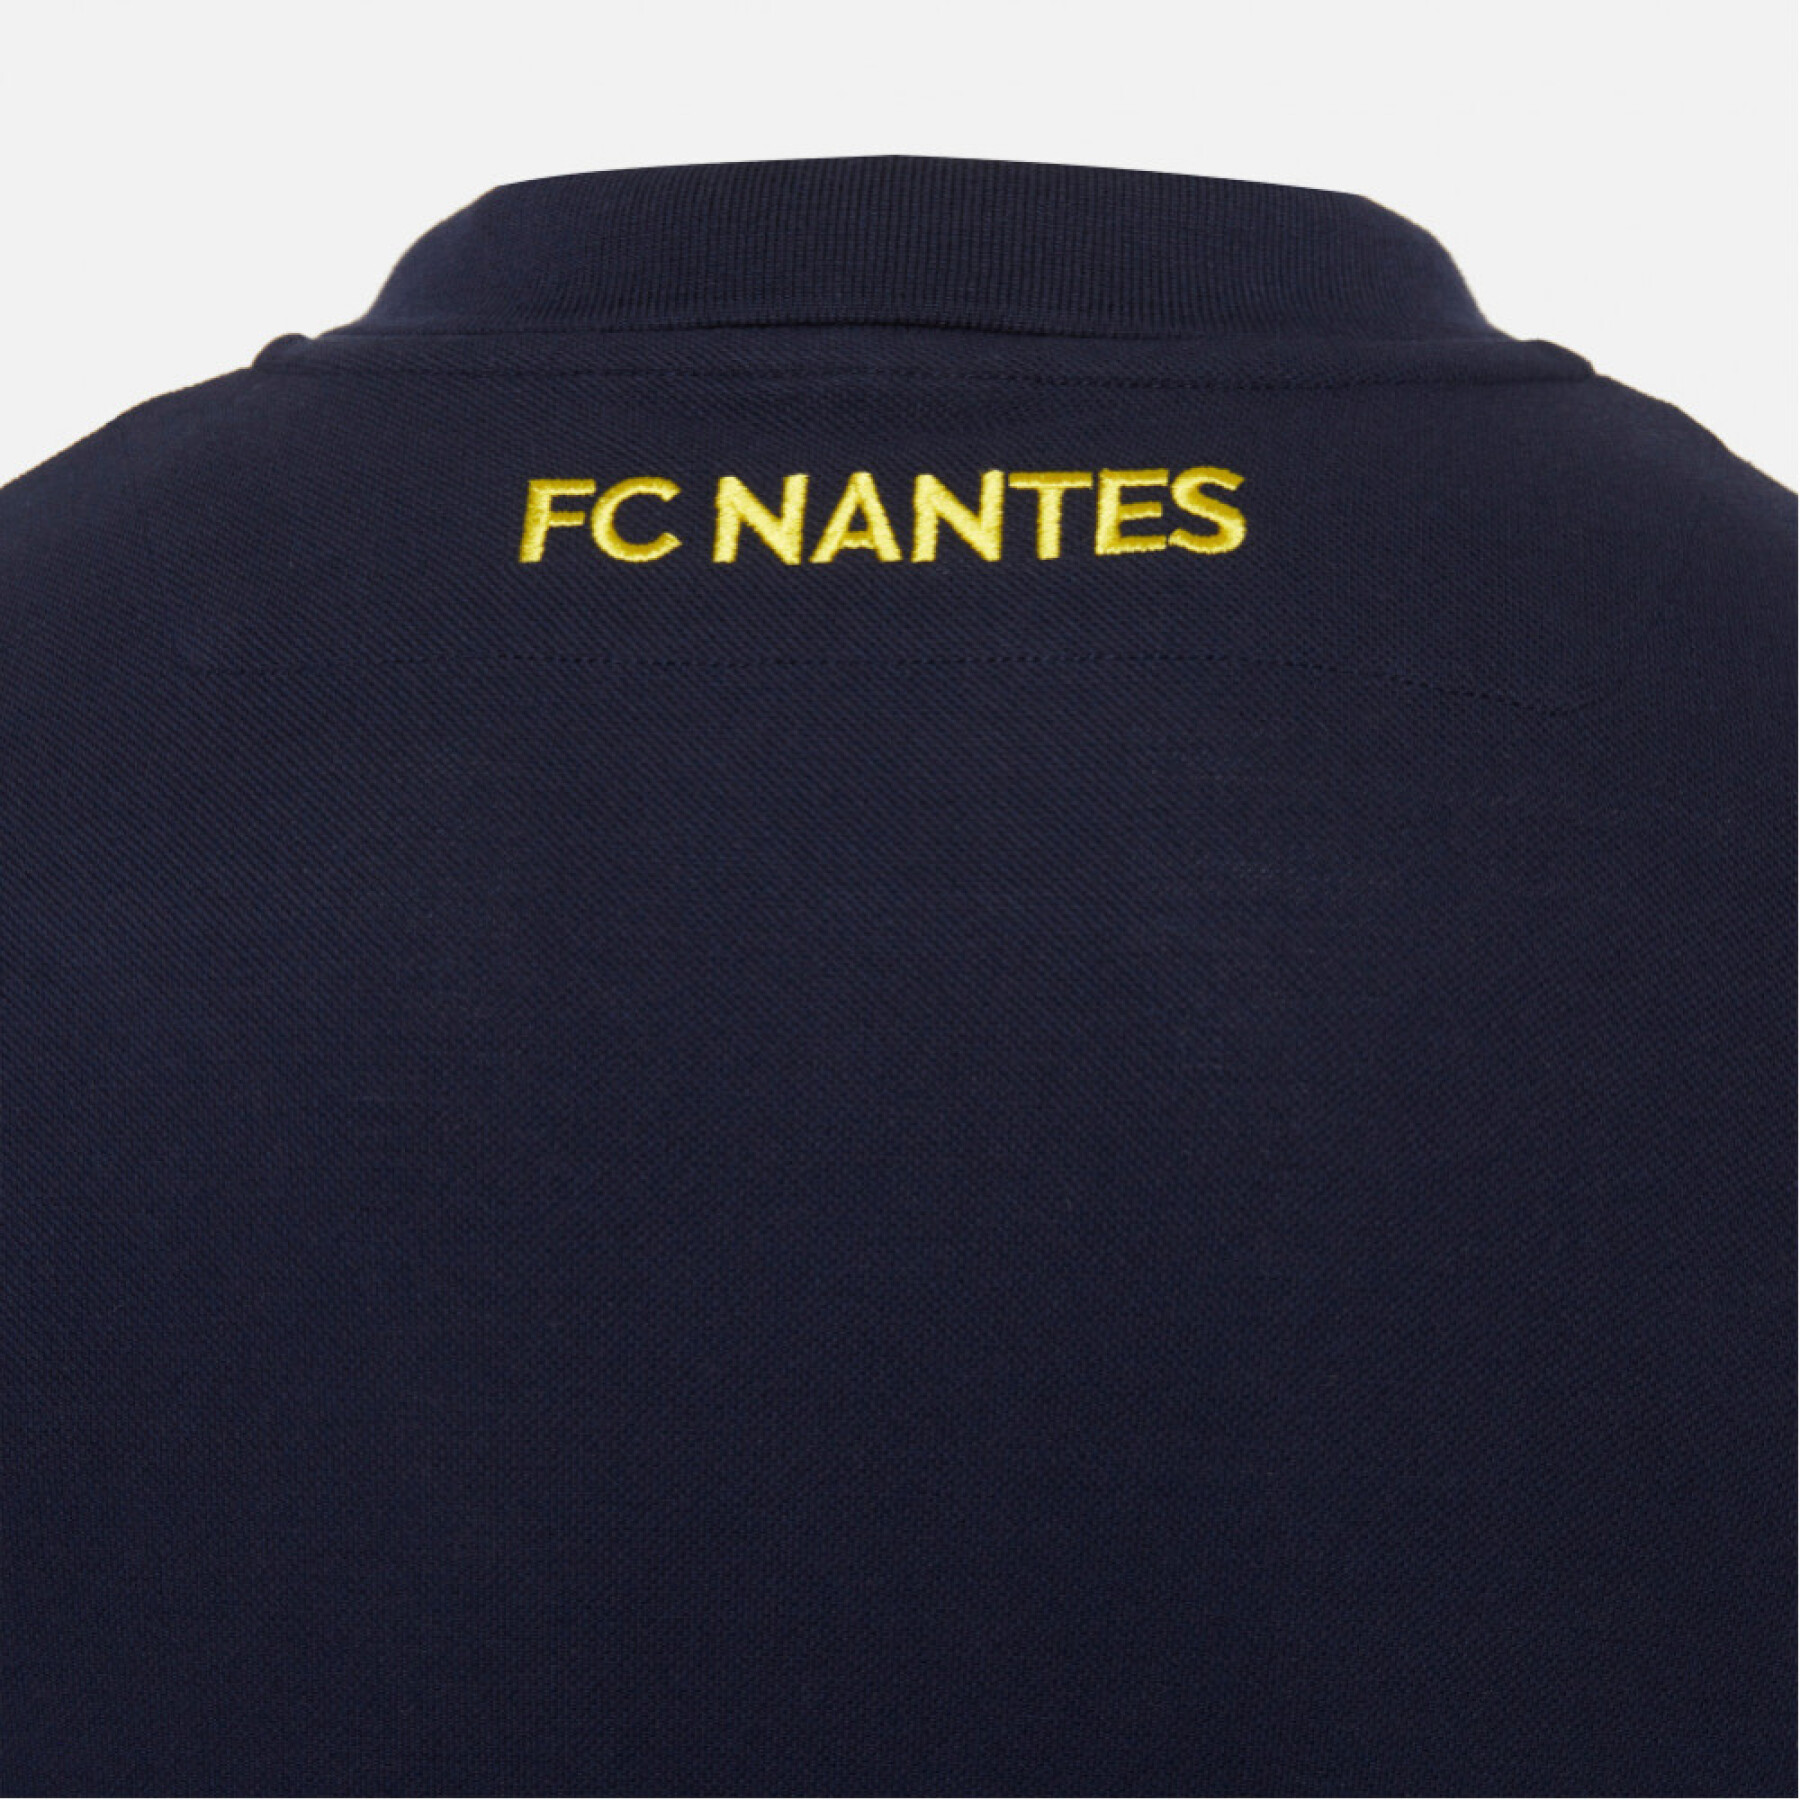 Pólo criança viajar FC Nantes 2020/21